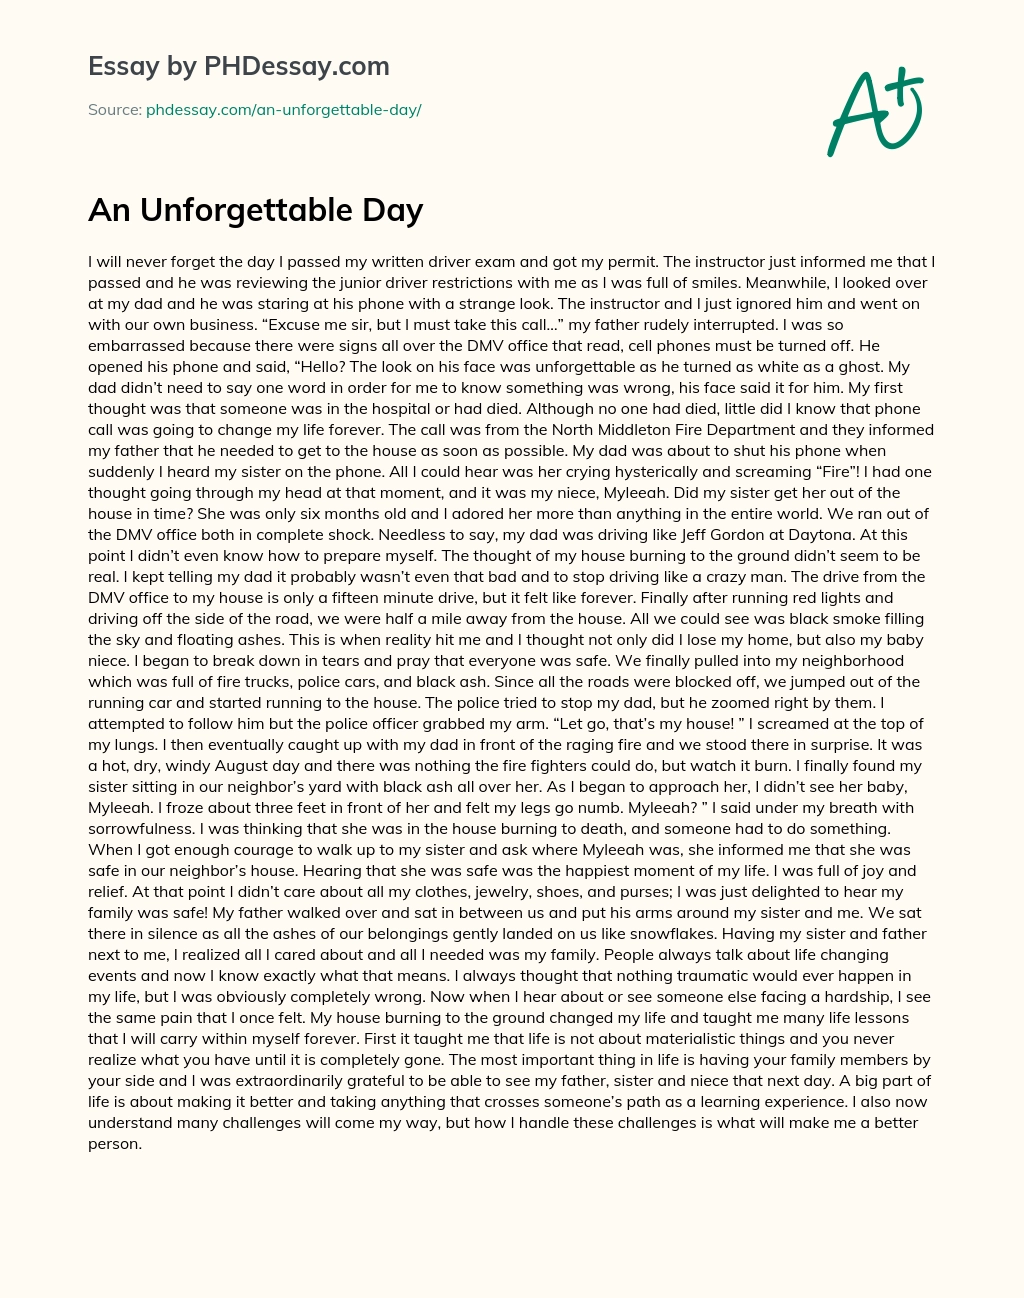 An Unforgettable Day essay